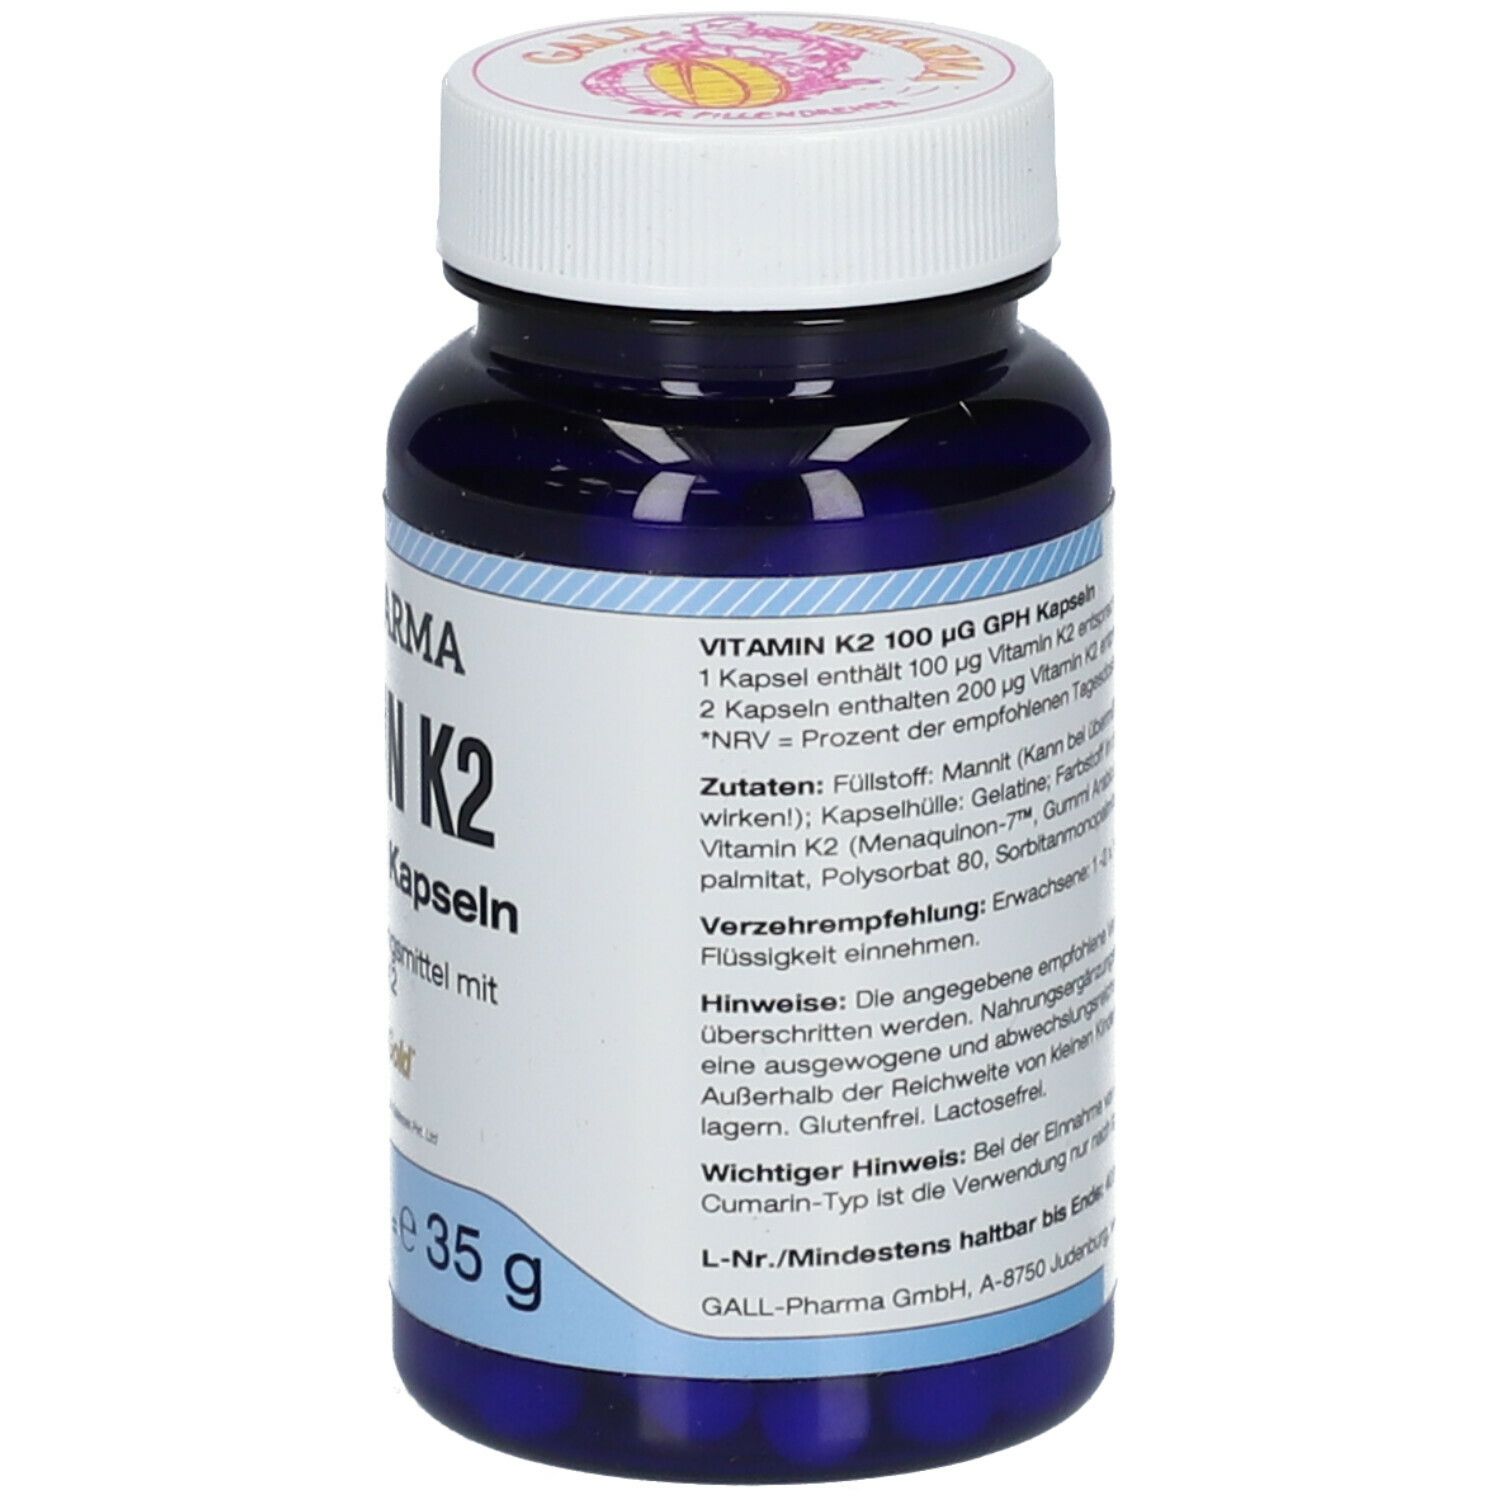 GALL PHARMA Vitamin K2 100 µg